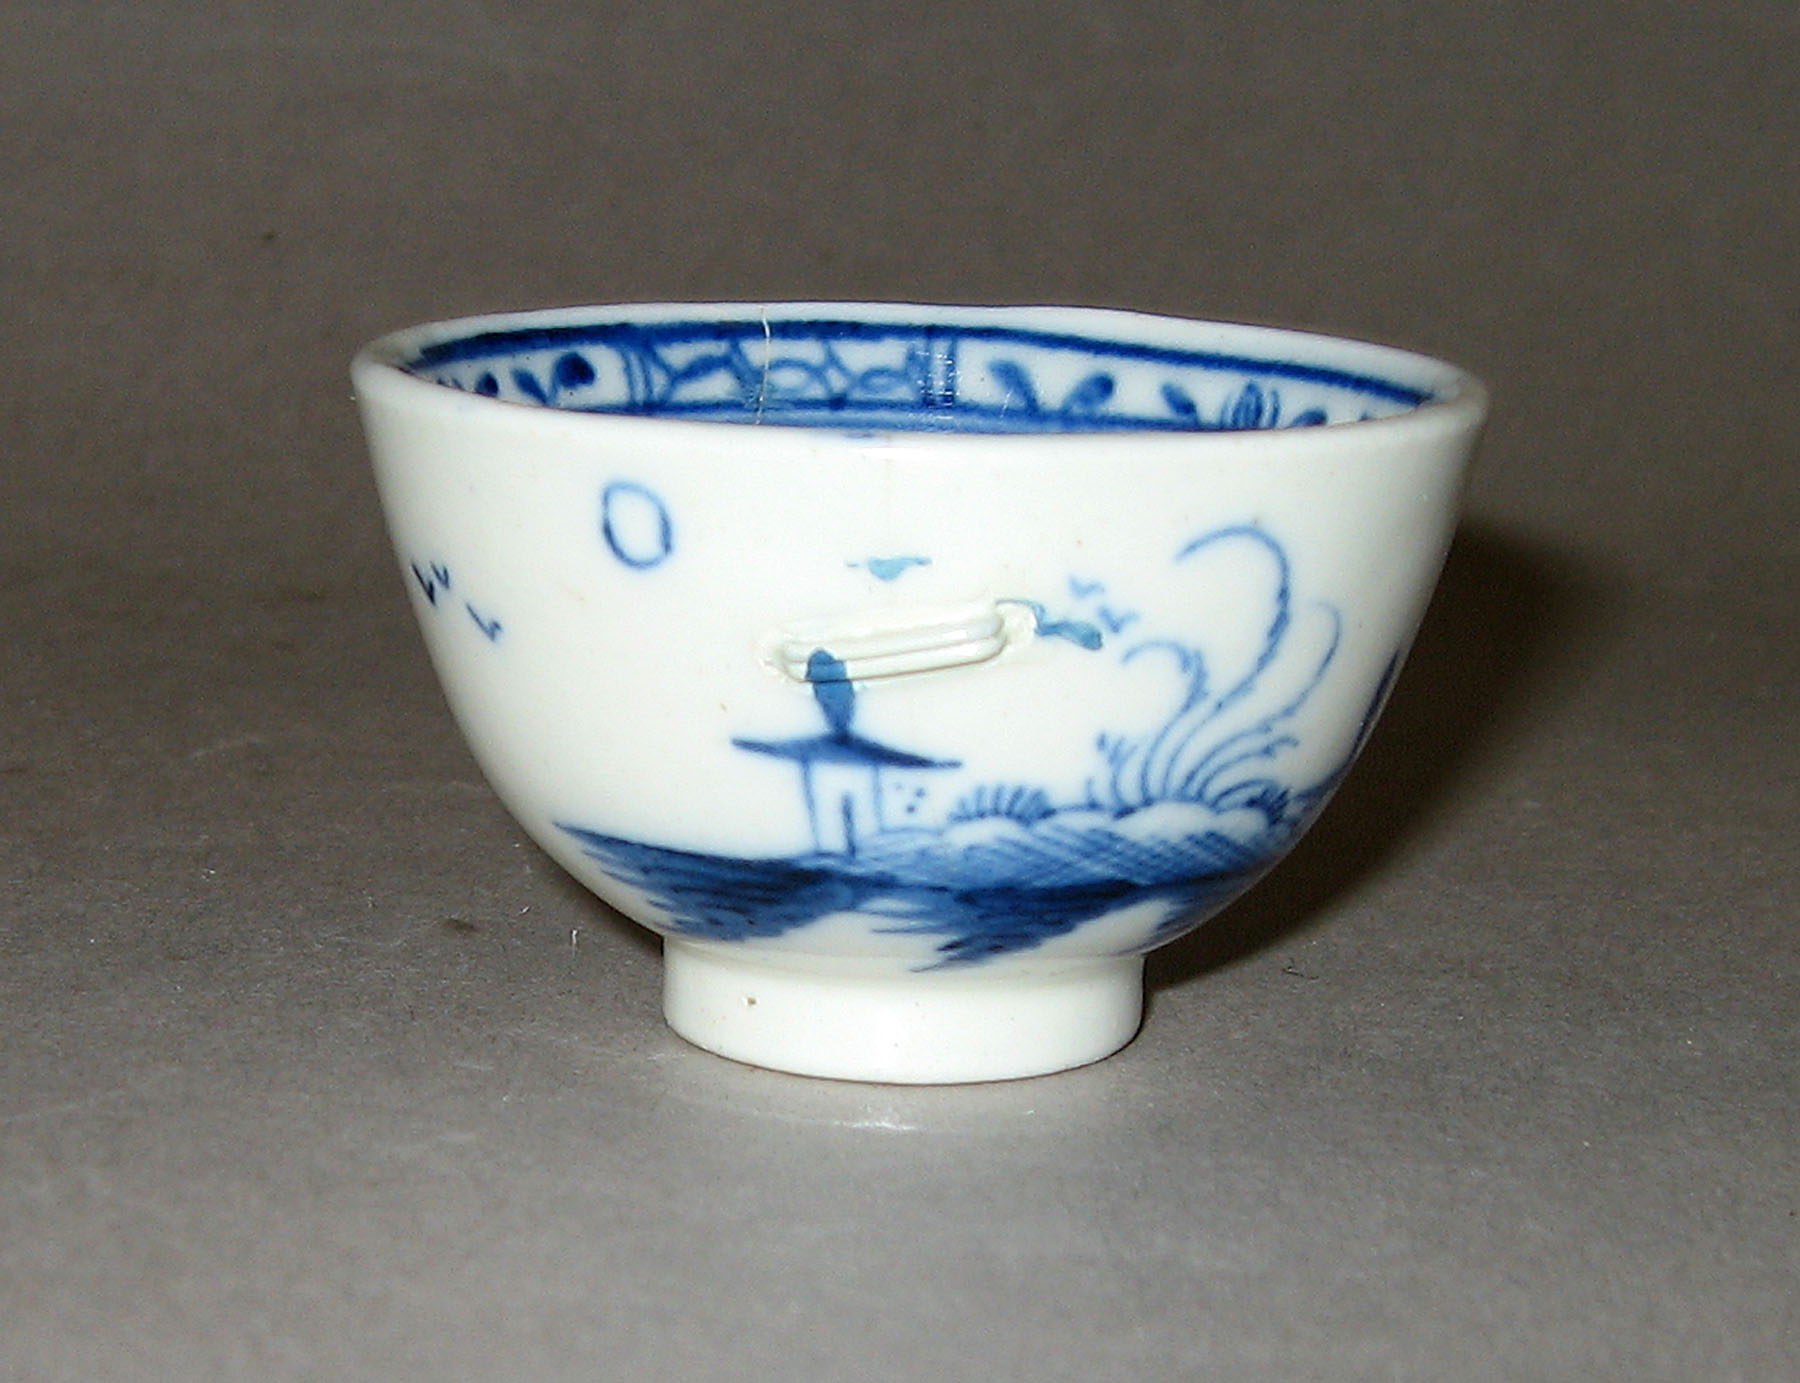 1965.0561.001 Miniature teabowl